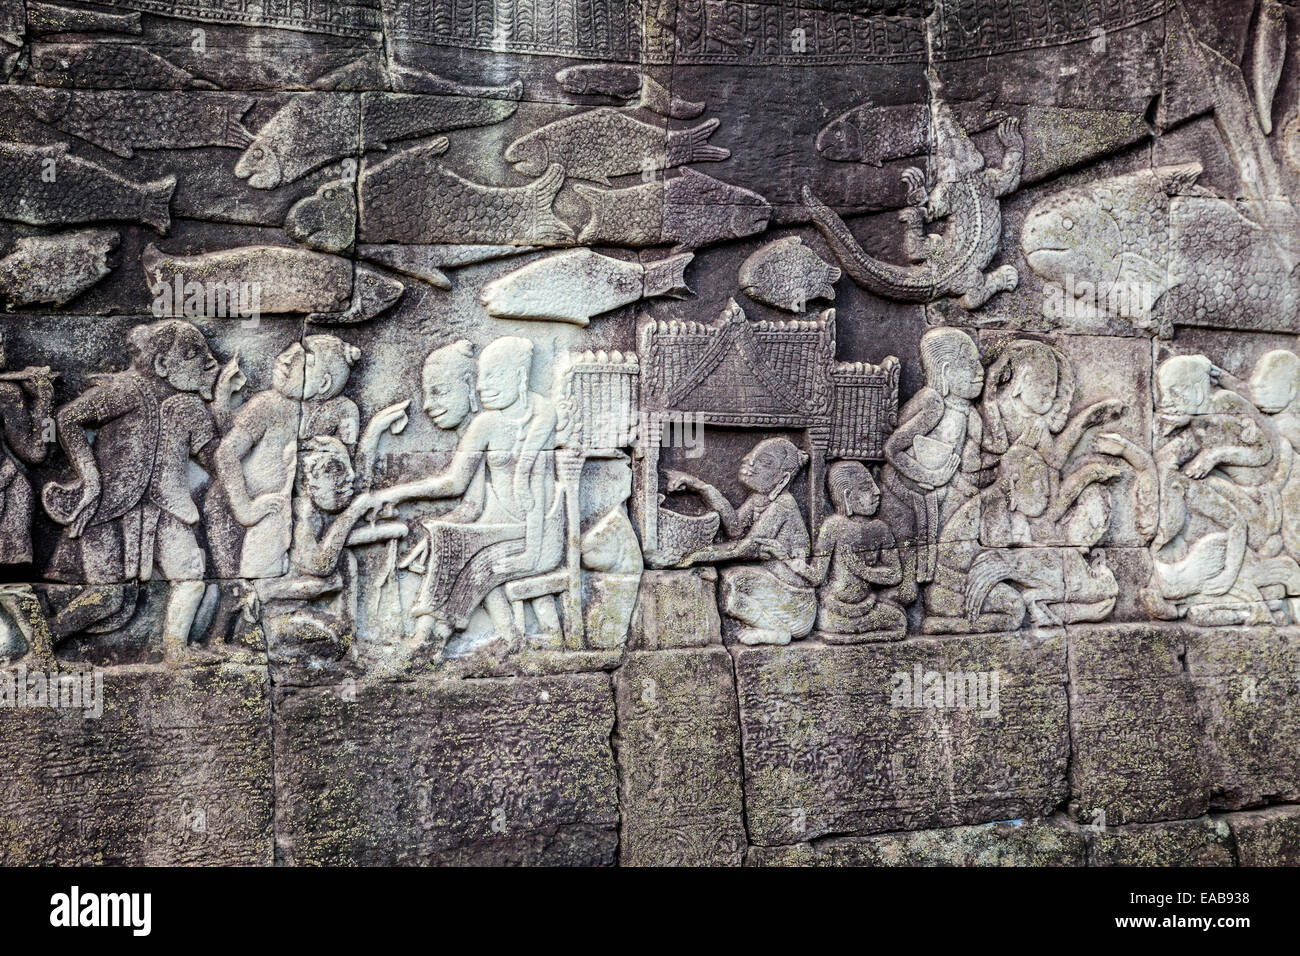 Cambodge, temple Bayon, fin 12ème-13ème. Siècle. Bas-relief de scène montrant la vie quotidienne. Banque D'Images